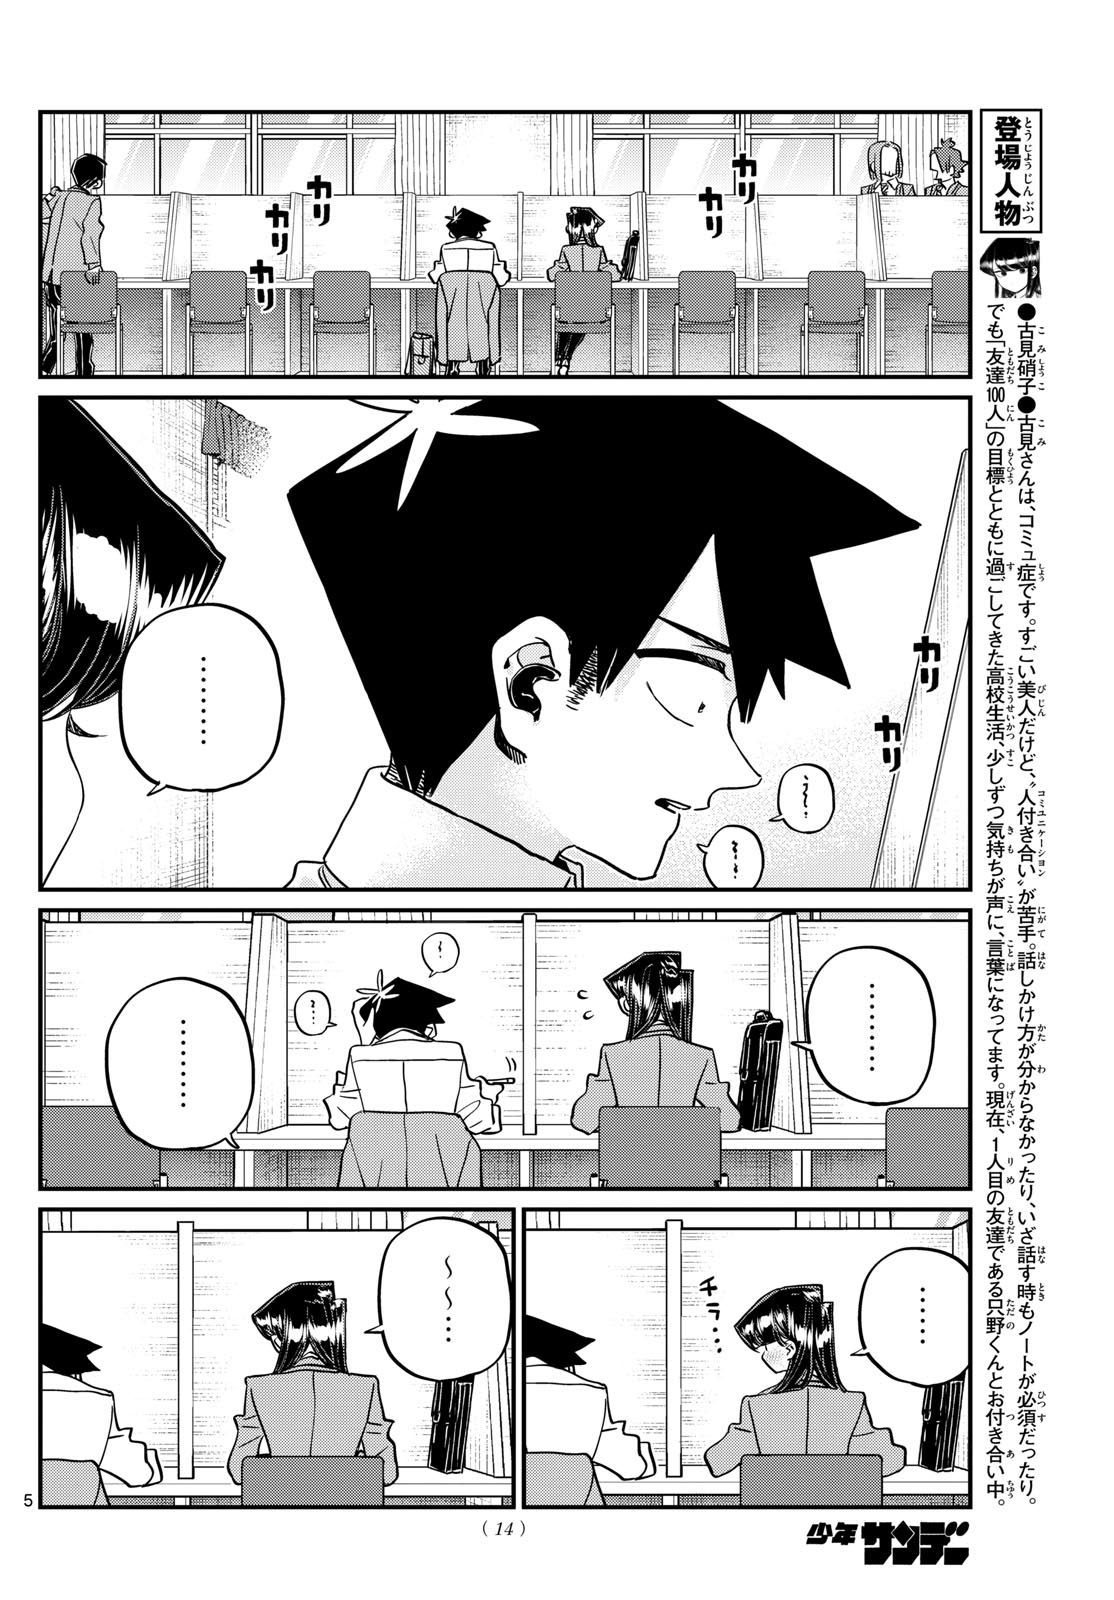 Komi-san wa Komyushou Desu - Chapter 472 - Page 5